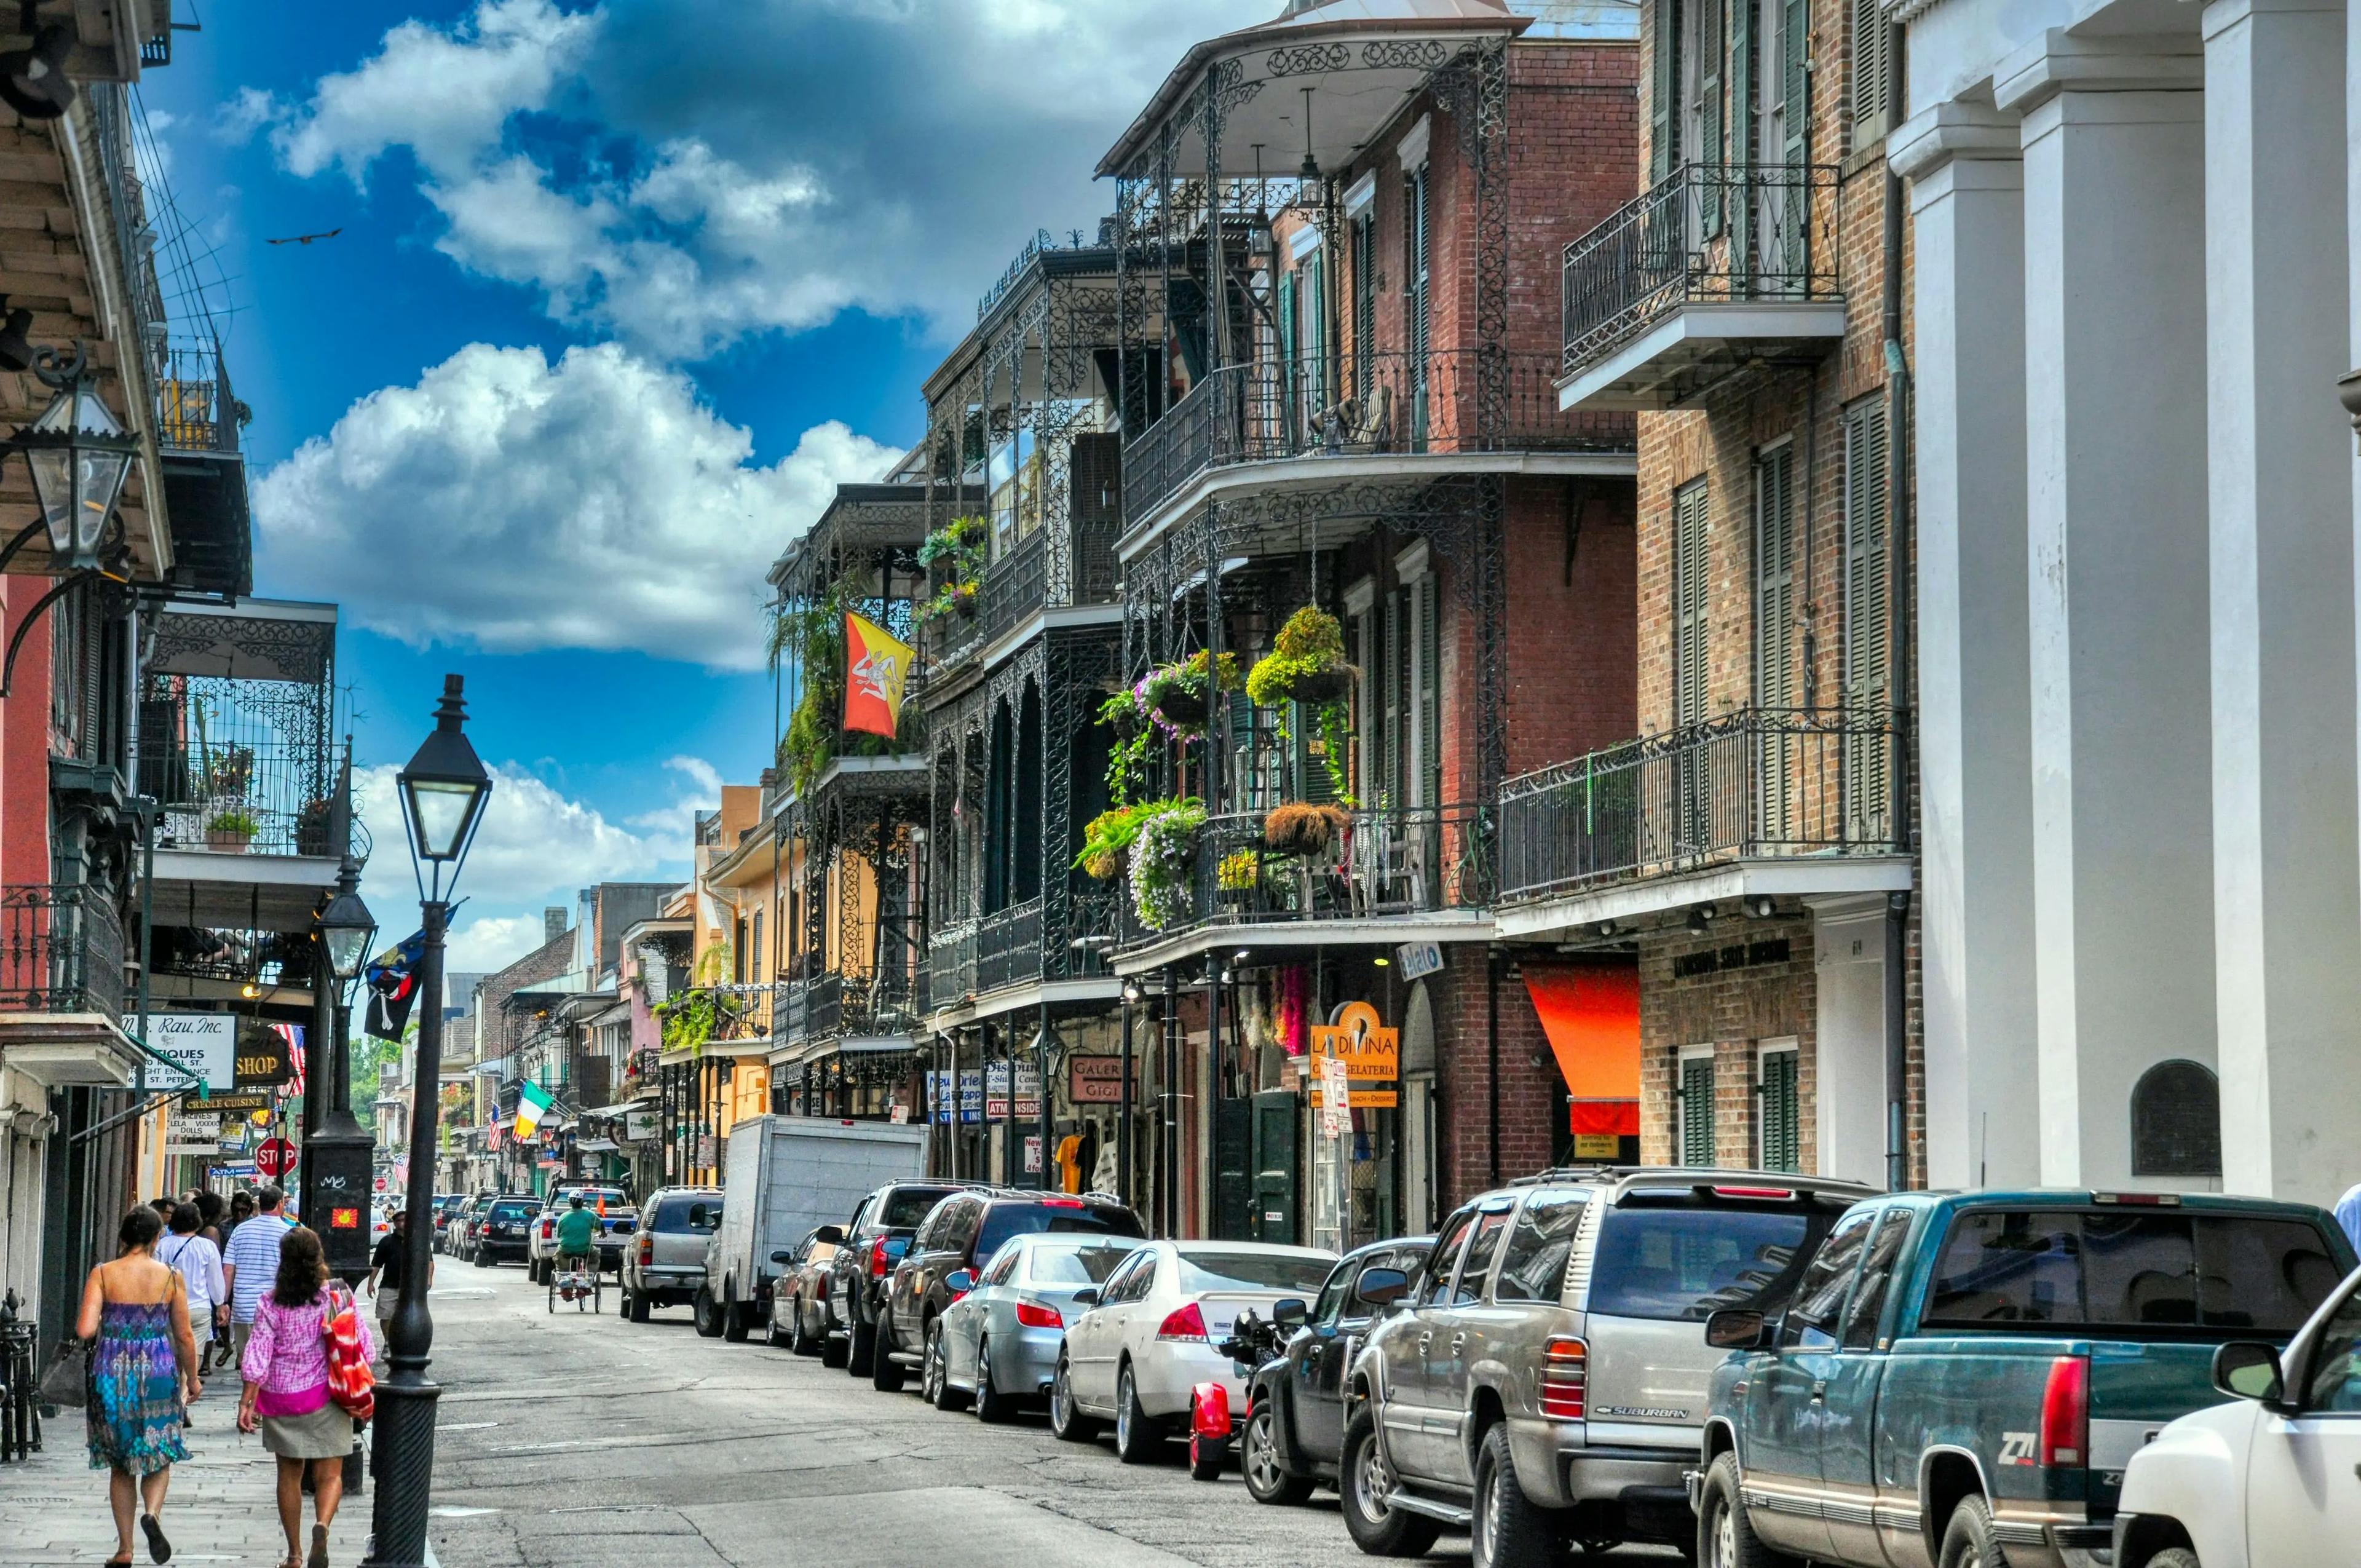 New Orleans Tourist Information Handbook